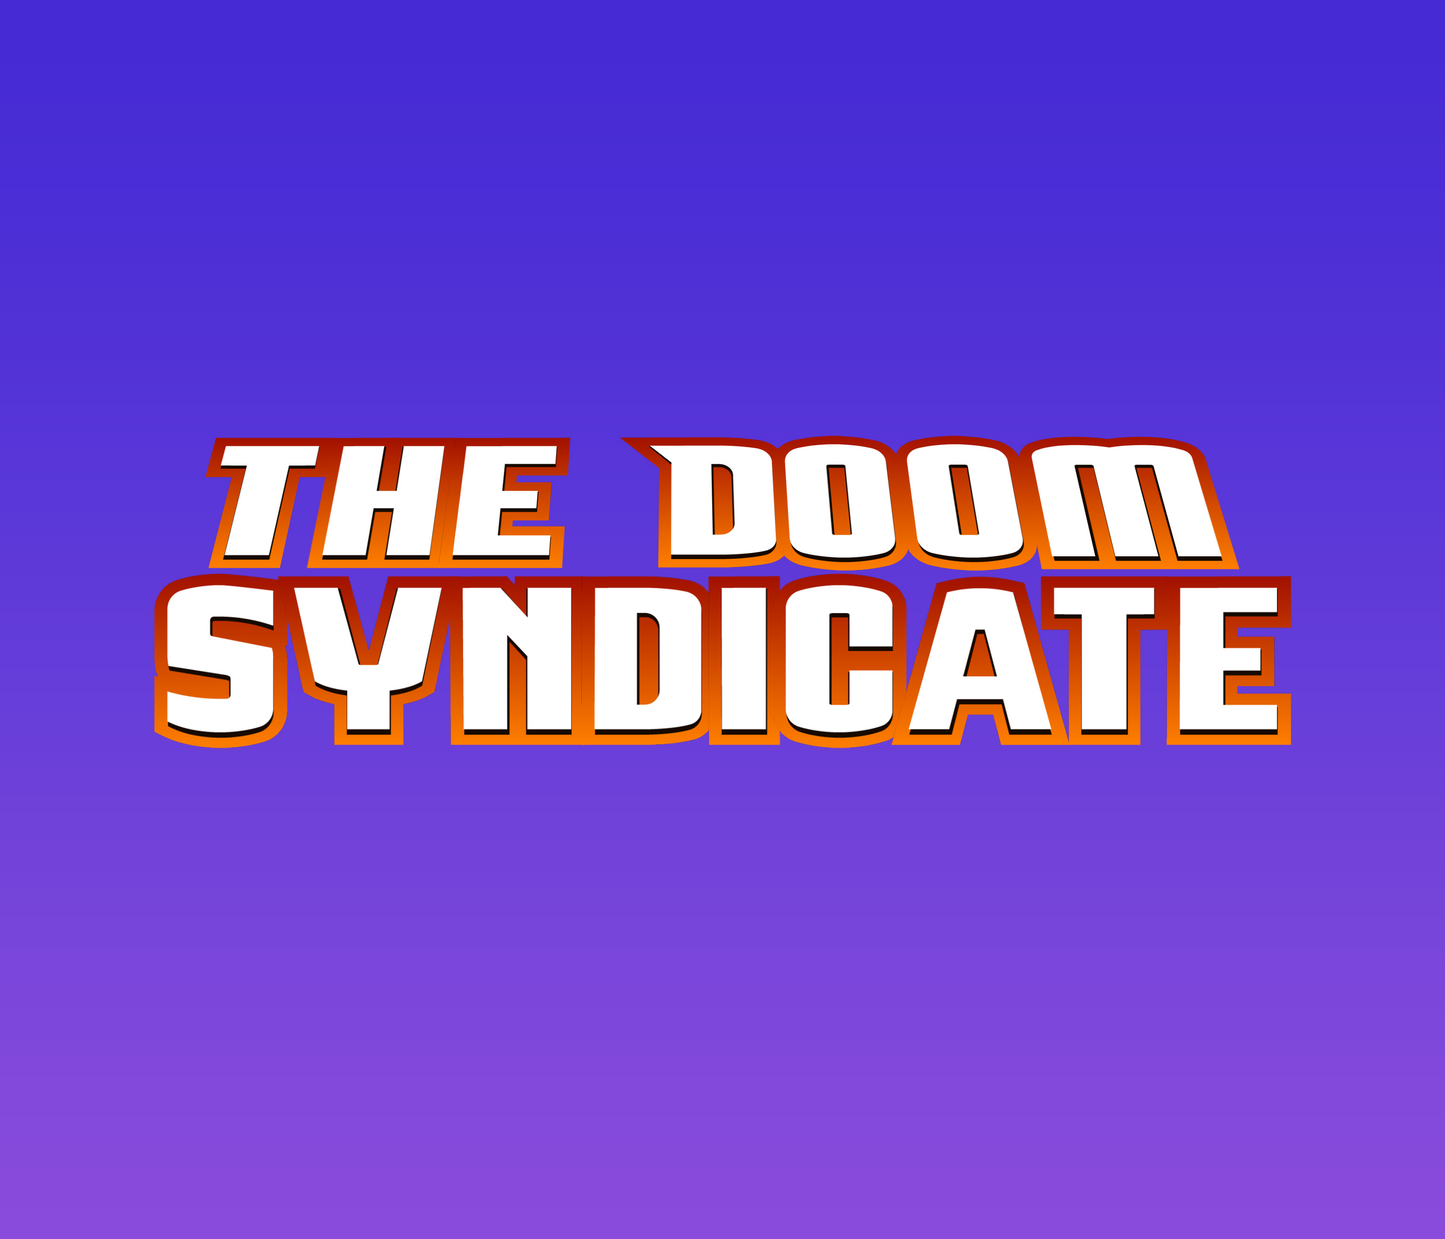 Megamind Vs. Doom Syndicate Textured Font